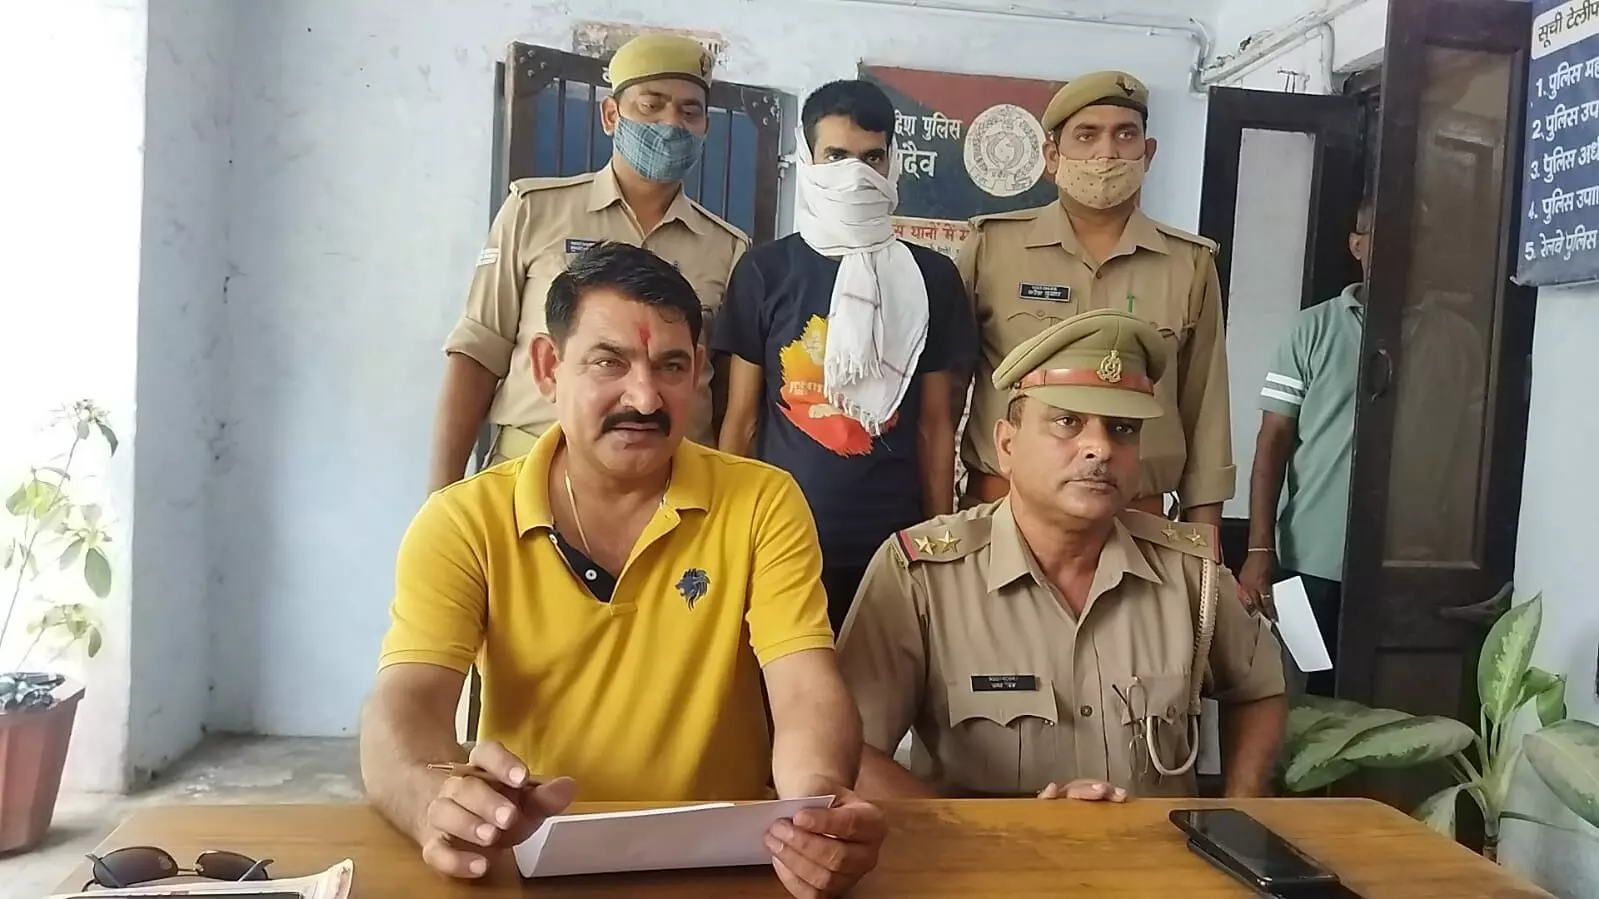 जीआरपी ने रेलवे स्टेशन पर पकड़ा गांजा, एक युवक को किया गिरफ्तार